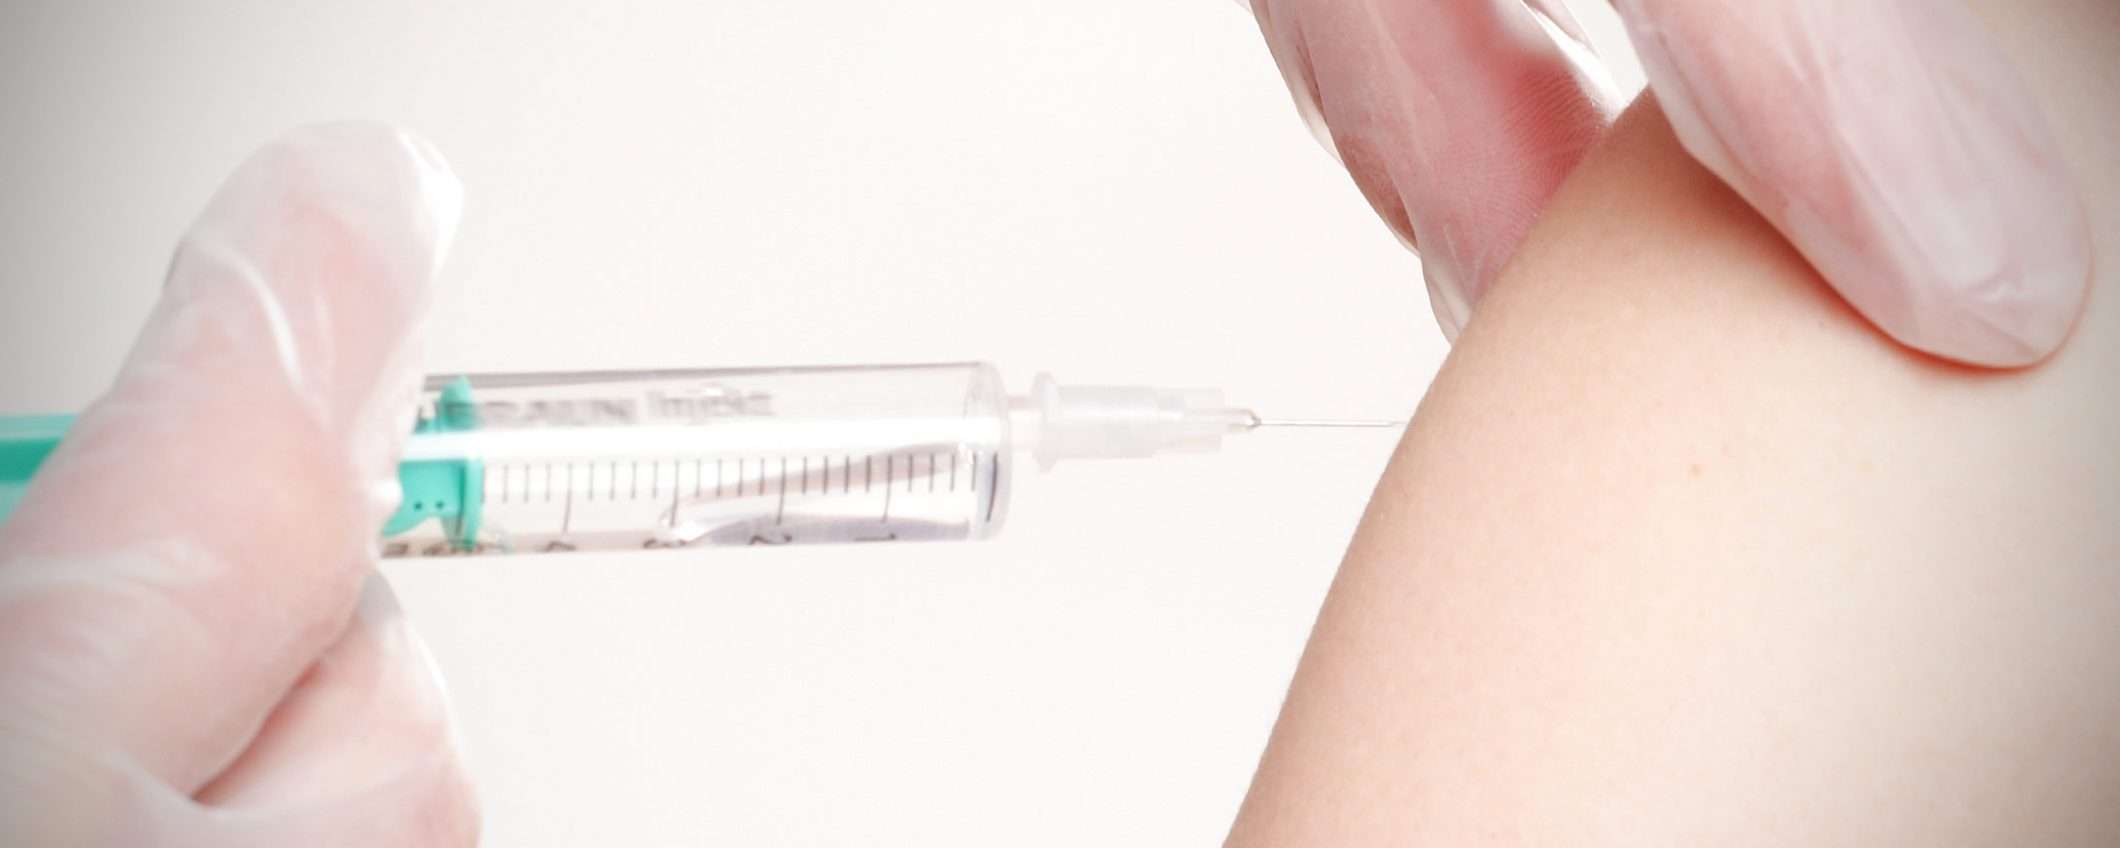 Vaccini e disinformazione: il nemico è alle porte